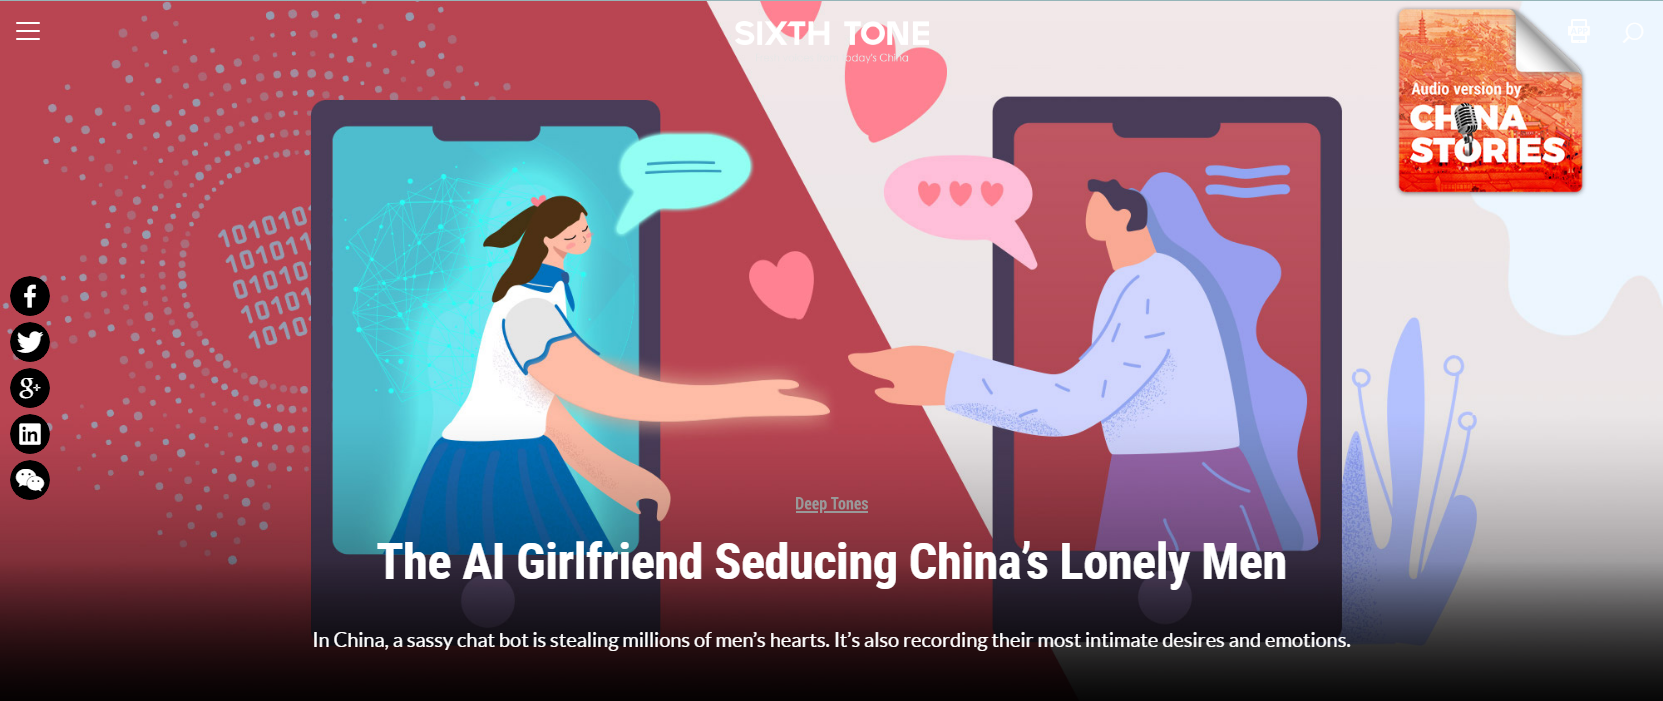 AI girl seducing lonely men